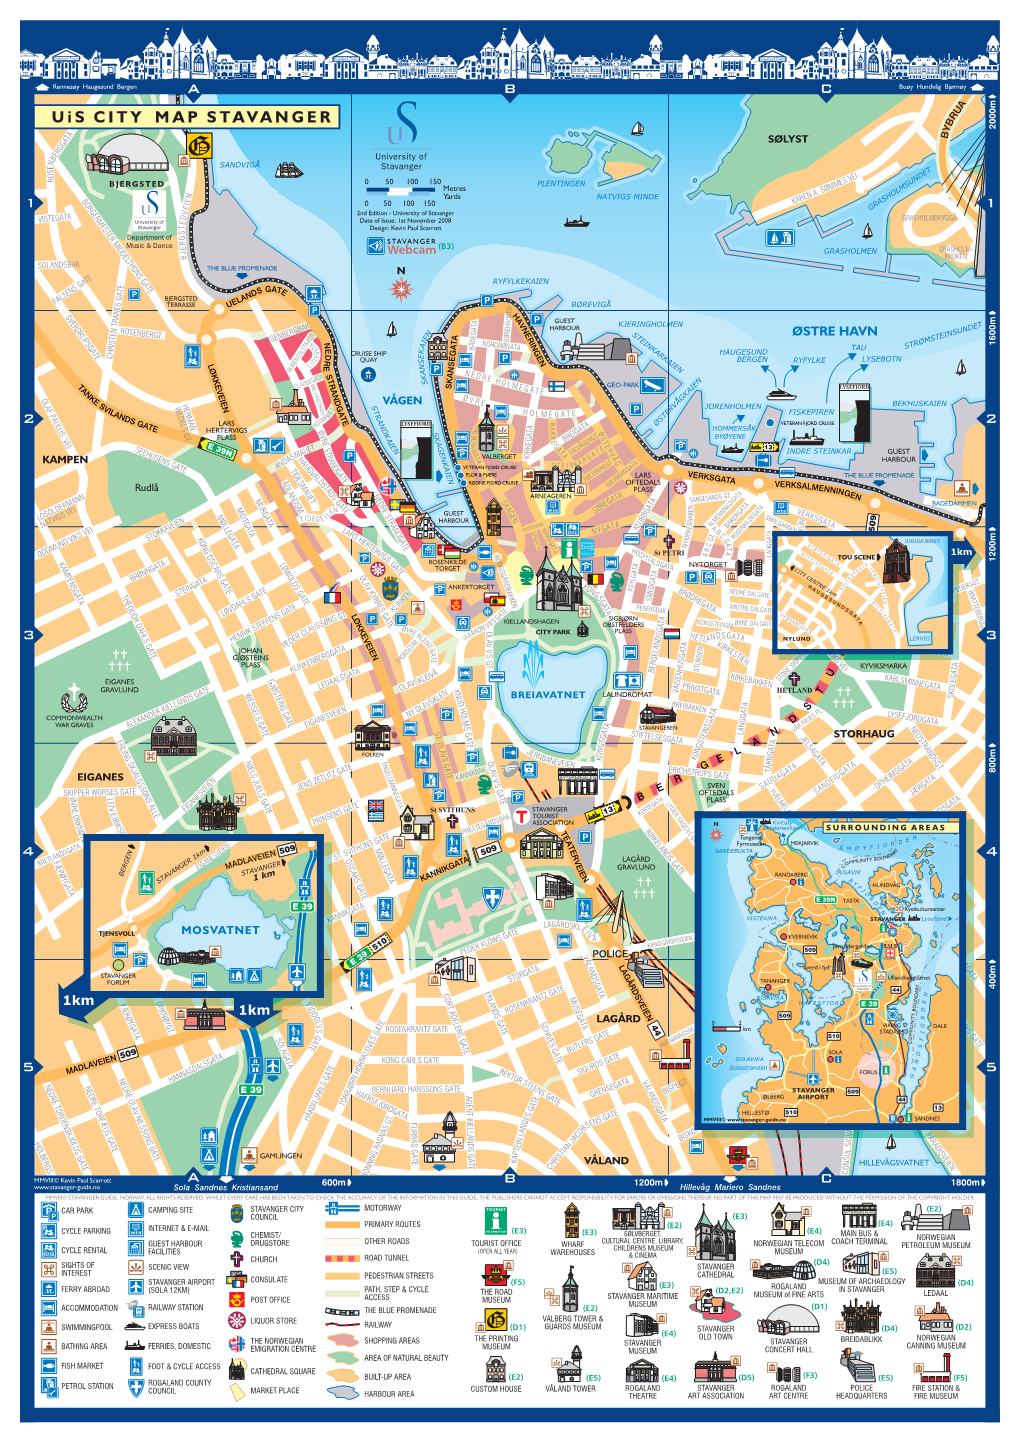 Uis City Map of Stavanger